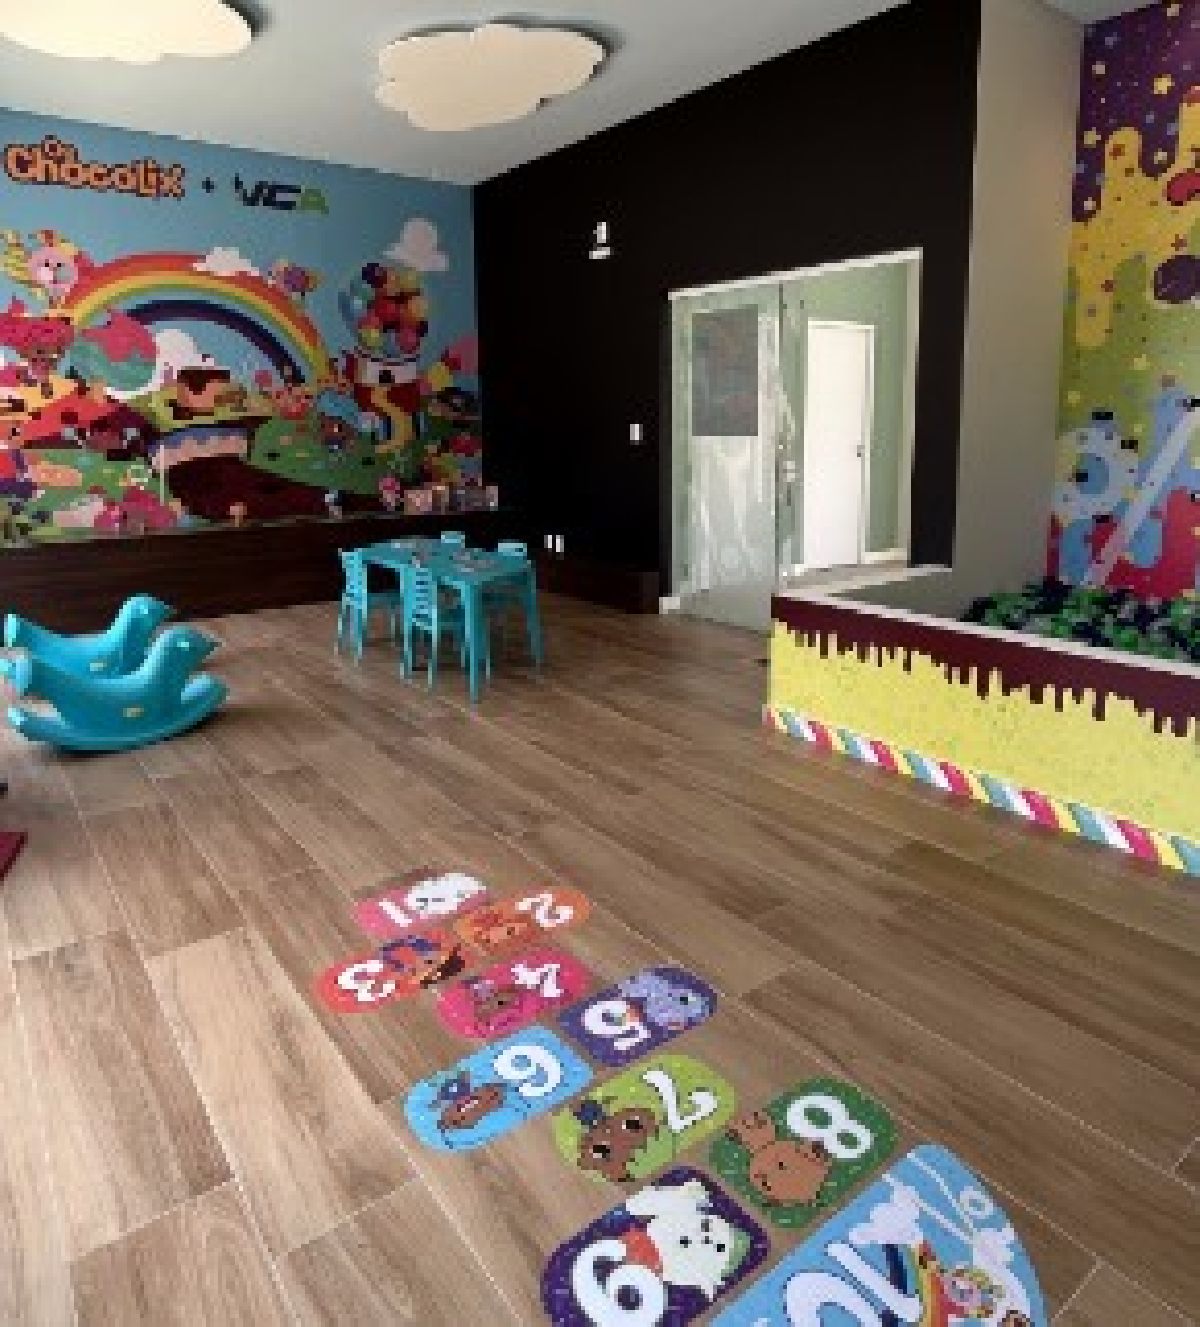 VCA Construtora e Os Chocolix anunciam collab para ambientação de espaço kids em condomínios residenciais no Nordeste